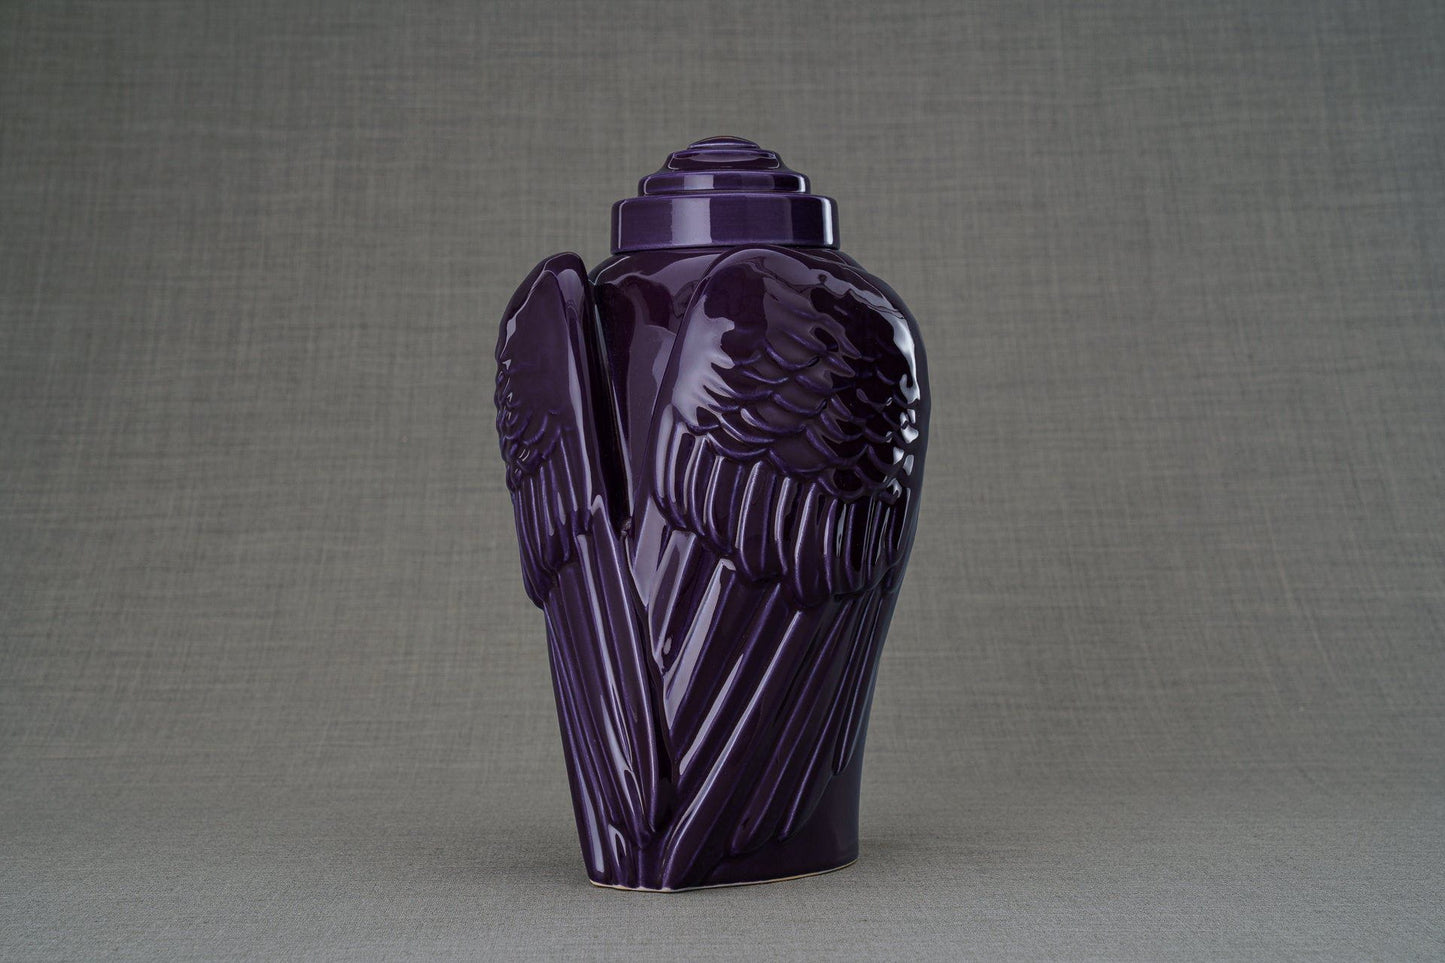 
                  
                    Pulvis Art Urns Adult Size Urn Handmade Cremation Urn for Ashes "Wings" - Large | Violet | Ceramic
                  
                